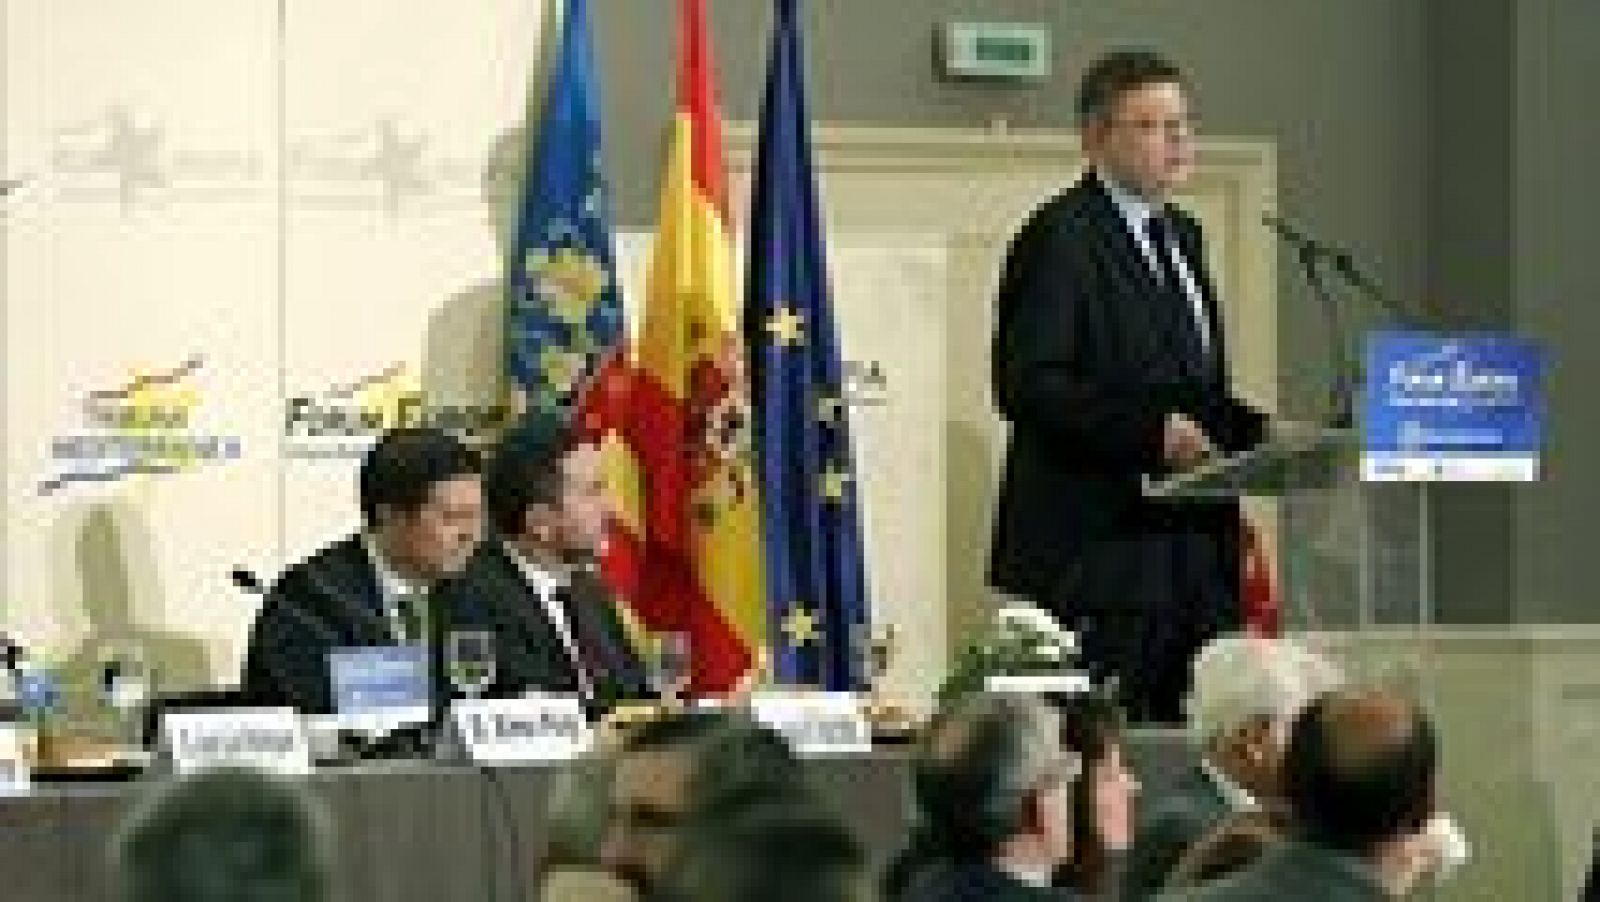 L'informatiu - Comunitat Valenciana: La Comunidad Valenciana en 2' - 23/02/15 | RTVE Play